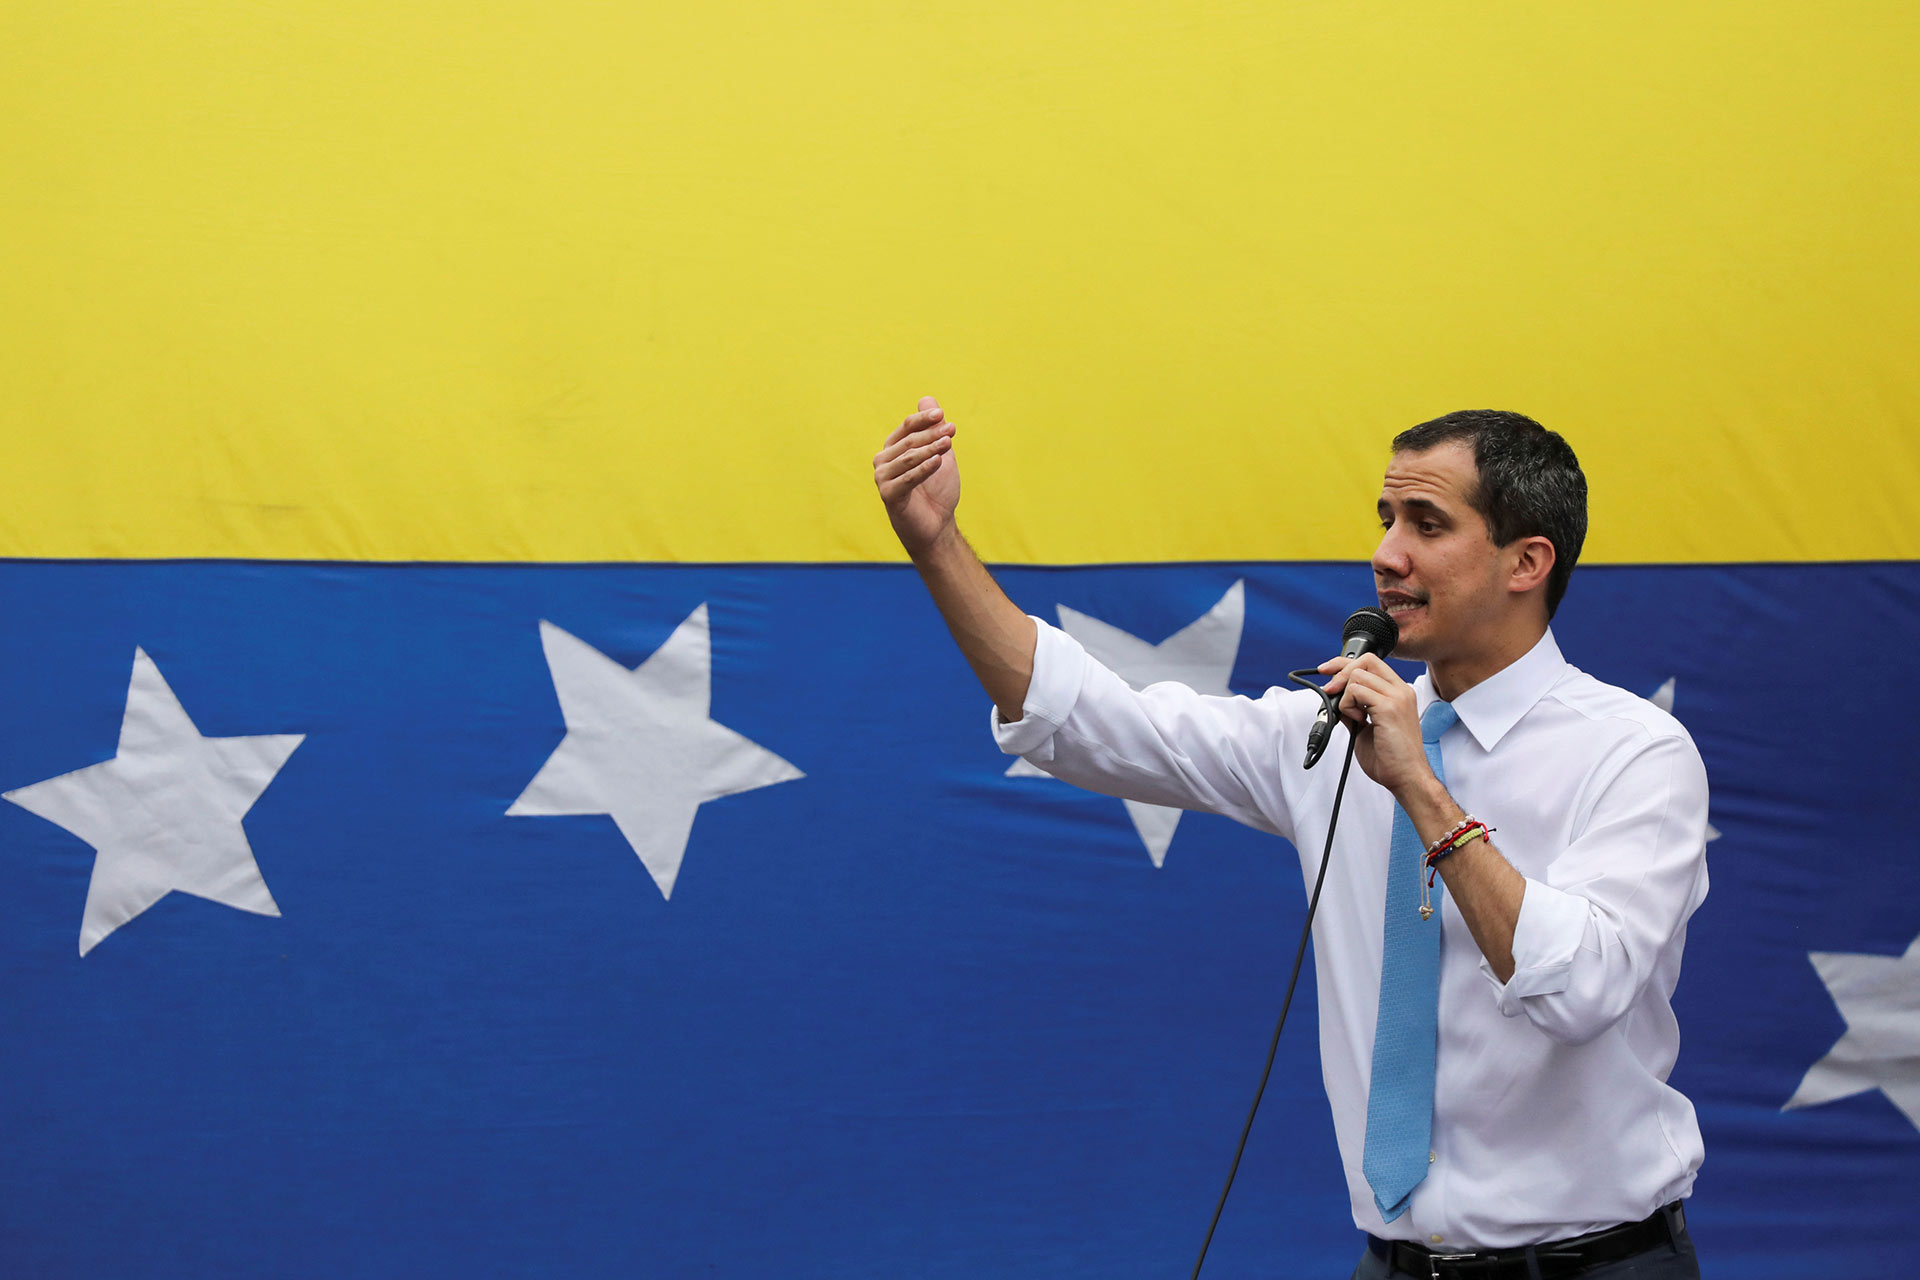 El coronavirus acerca posturas entre Guaidó y Maduro, que llegan a un acuerdo inédito